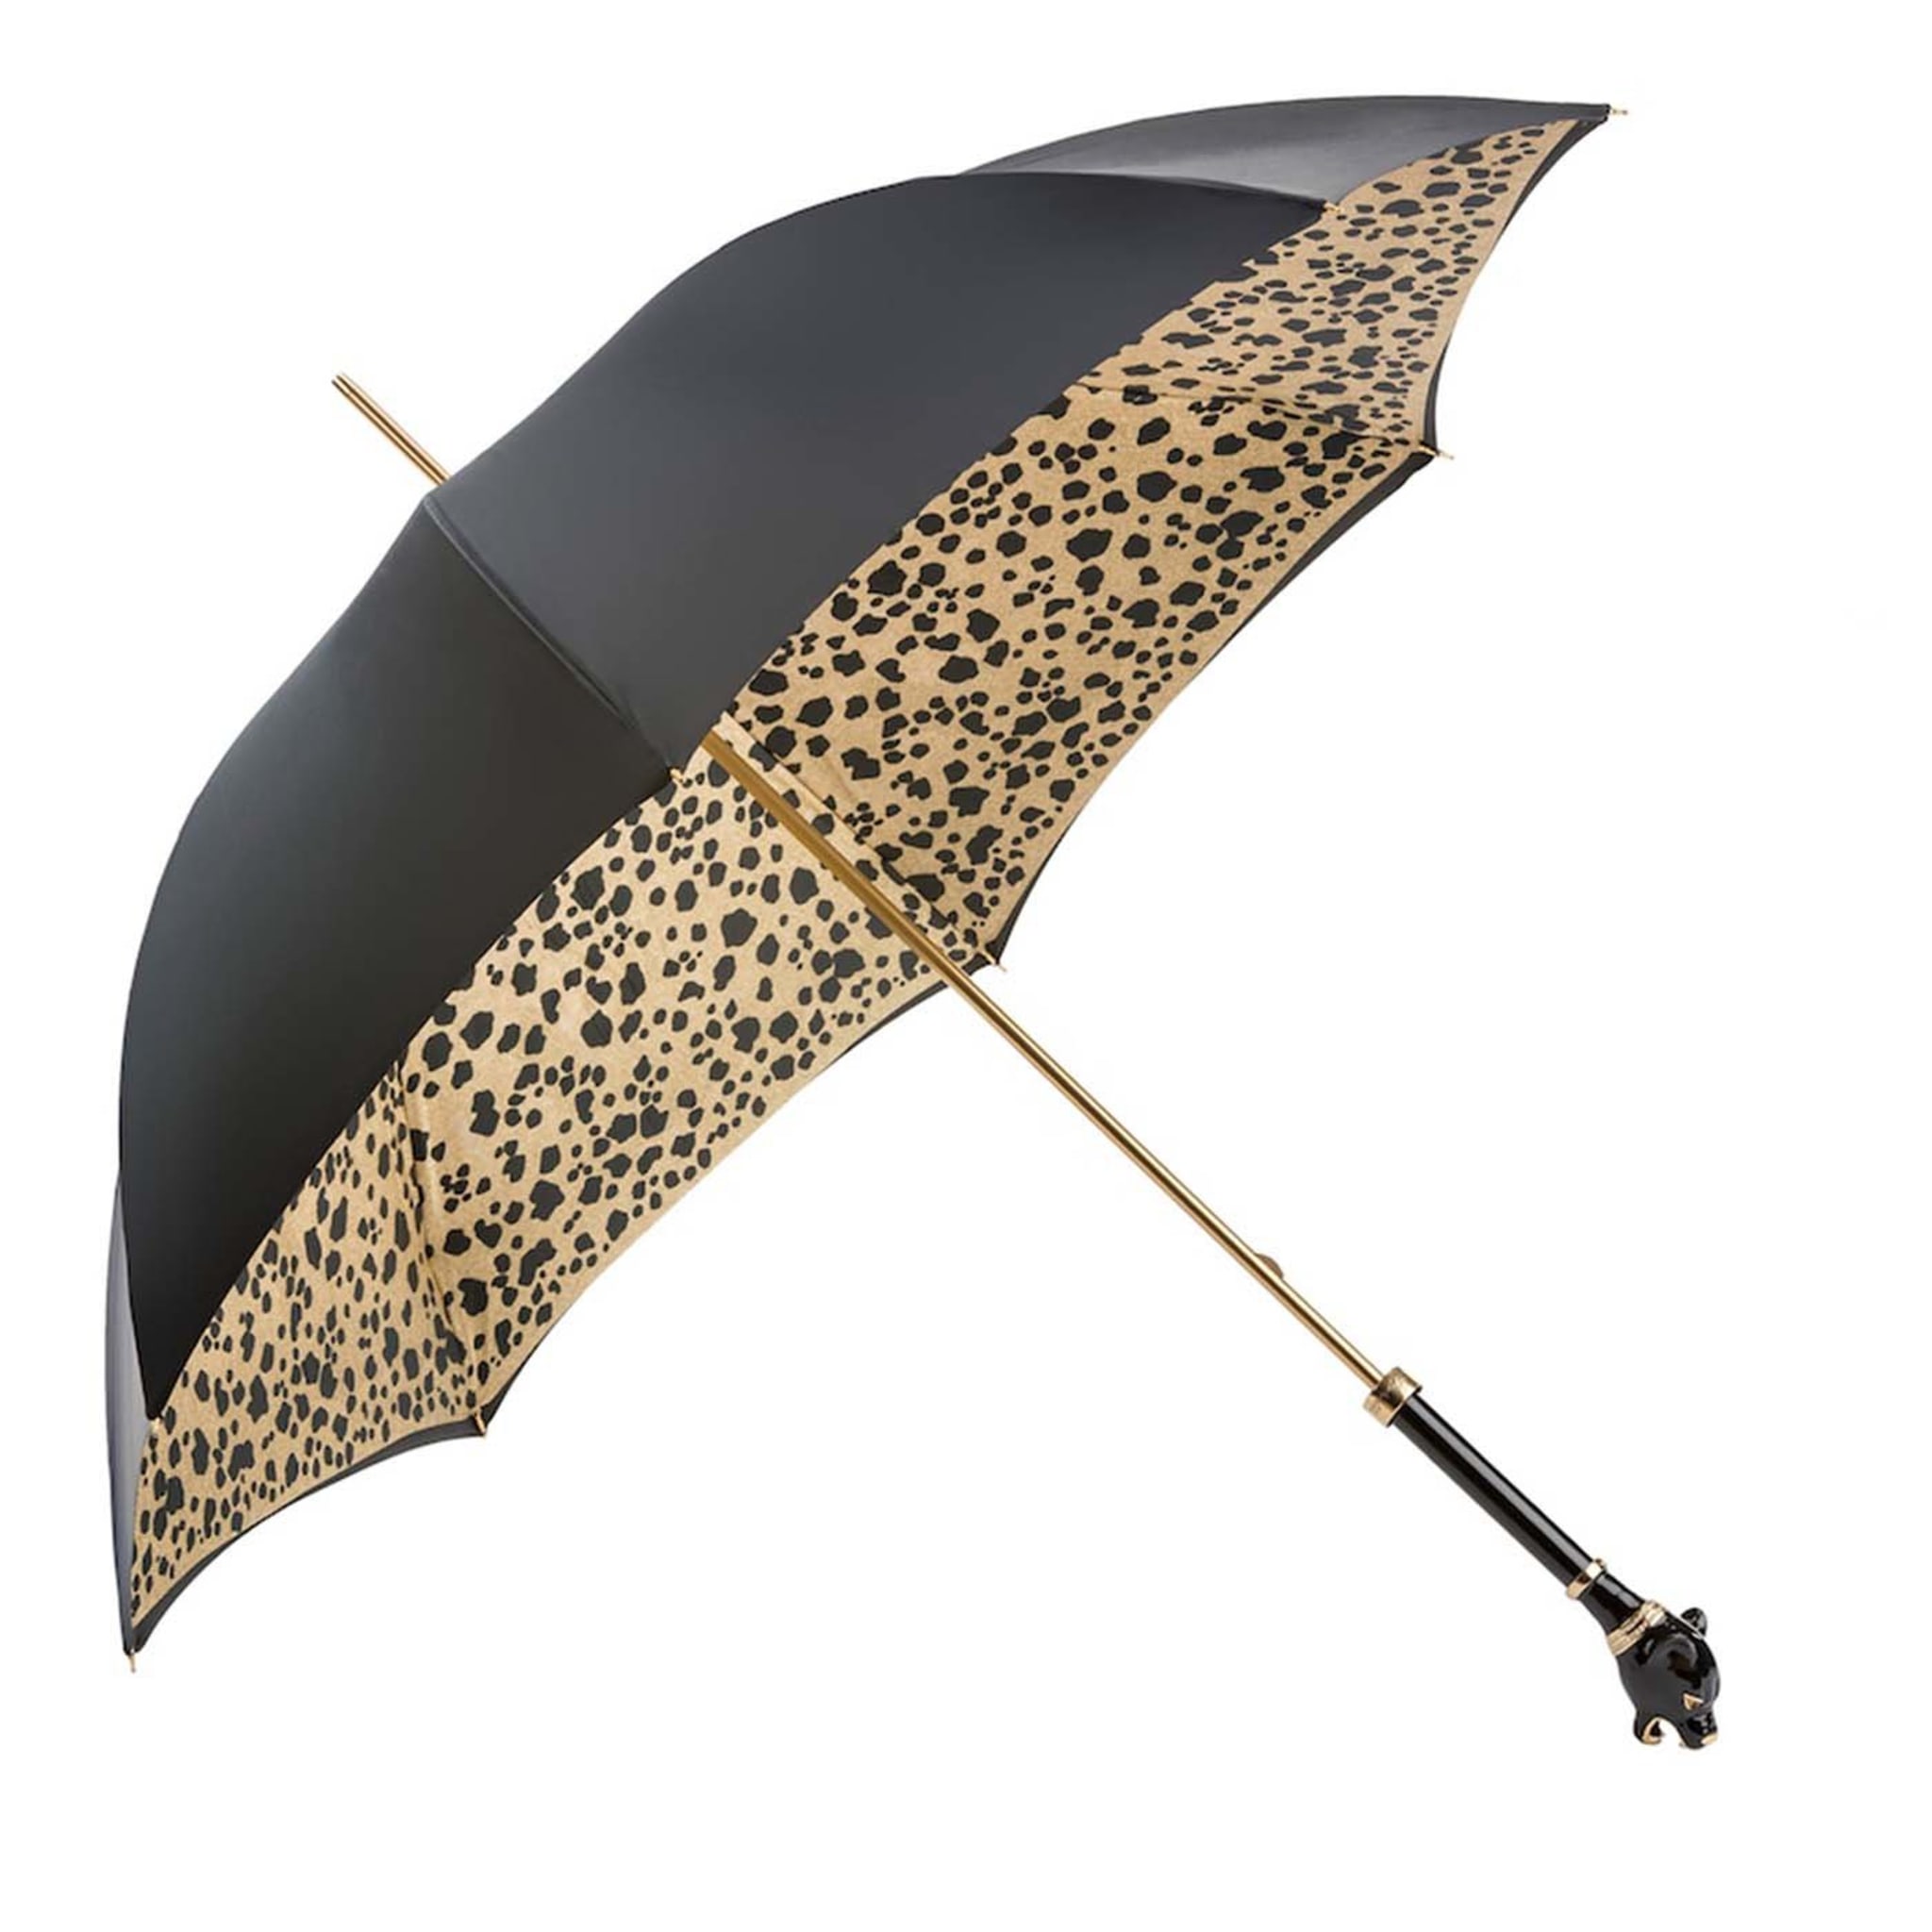 Schwarzer Regenschirm mit schwarzem Panther-Griff - Hauptansicht